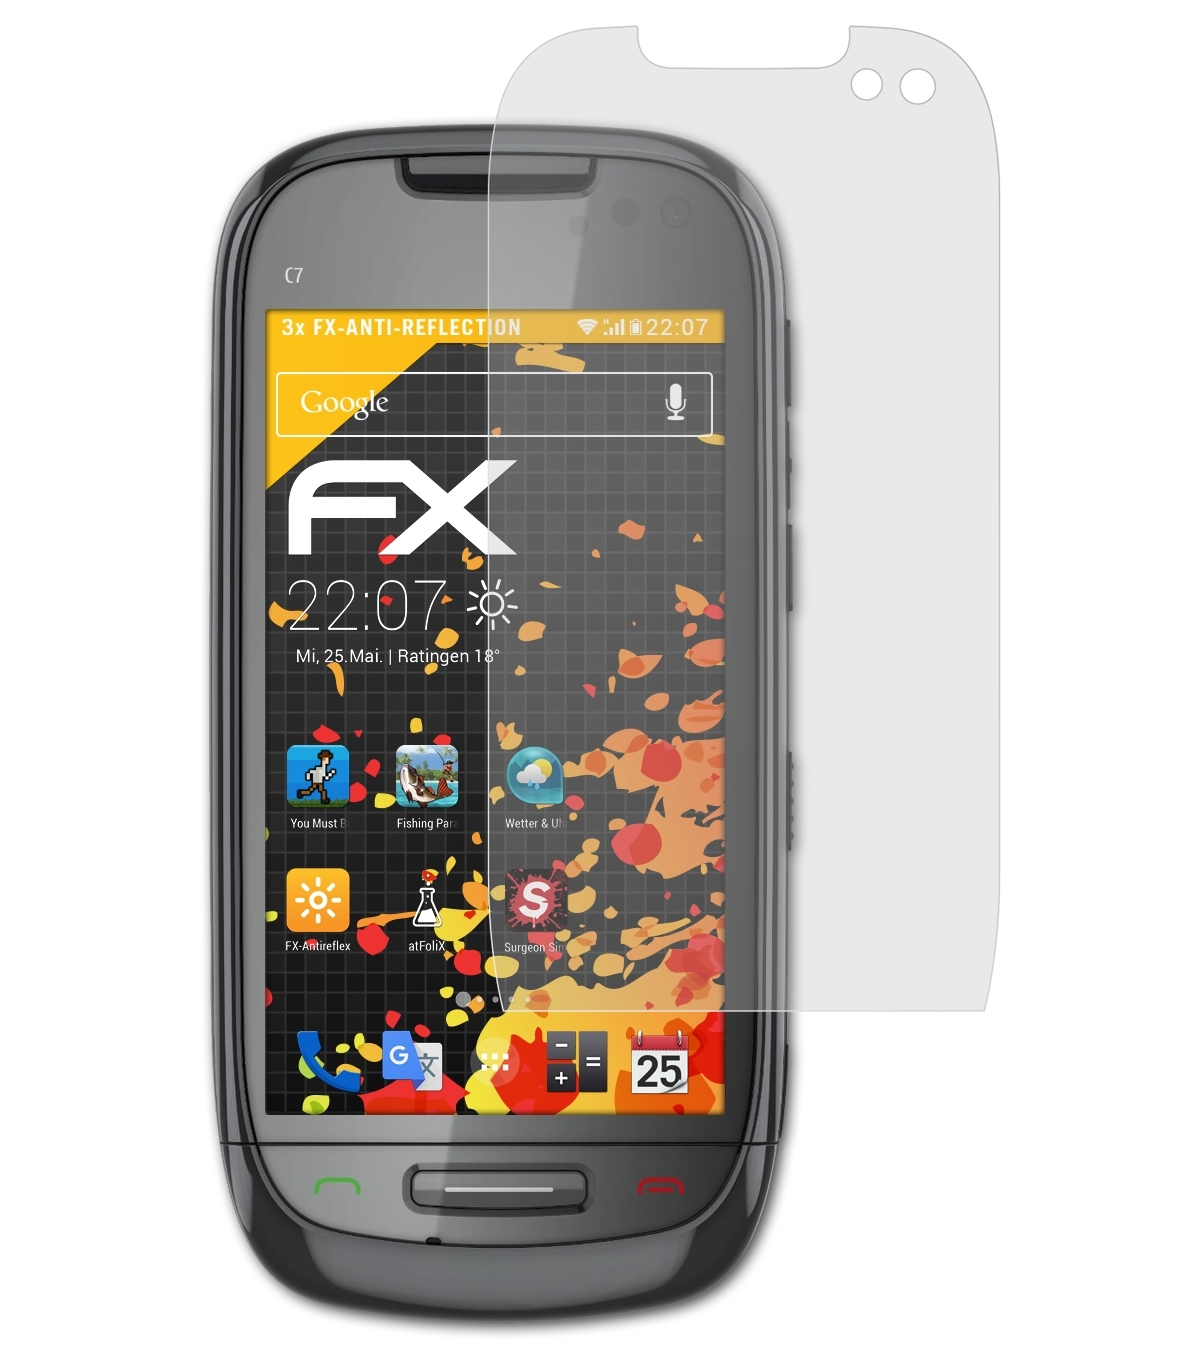 (Astound)) Displayschutz(für FX-Antireflex Nokia C7-00 3x ATFOLIX